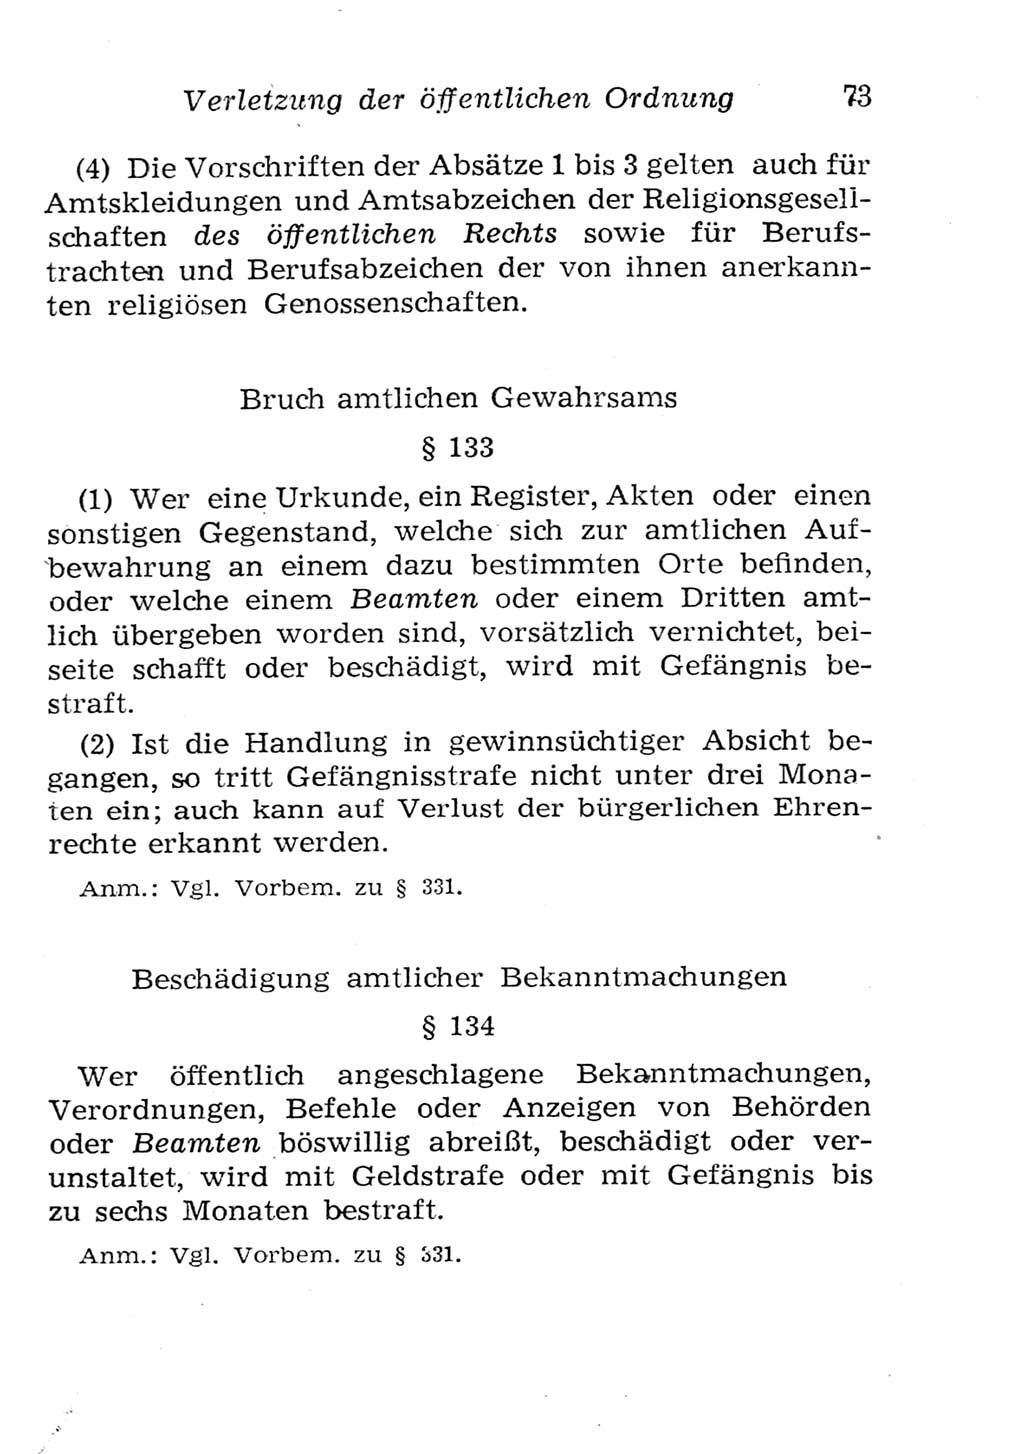 Strafgesetzbuch (StGB) und andere Strafgesetze [Deutsche Demokratische Republik (DDR)] 1957, Seite 73 (StGB Strafges. DDR 1957, S. 73)